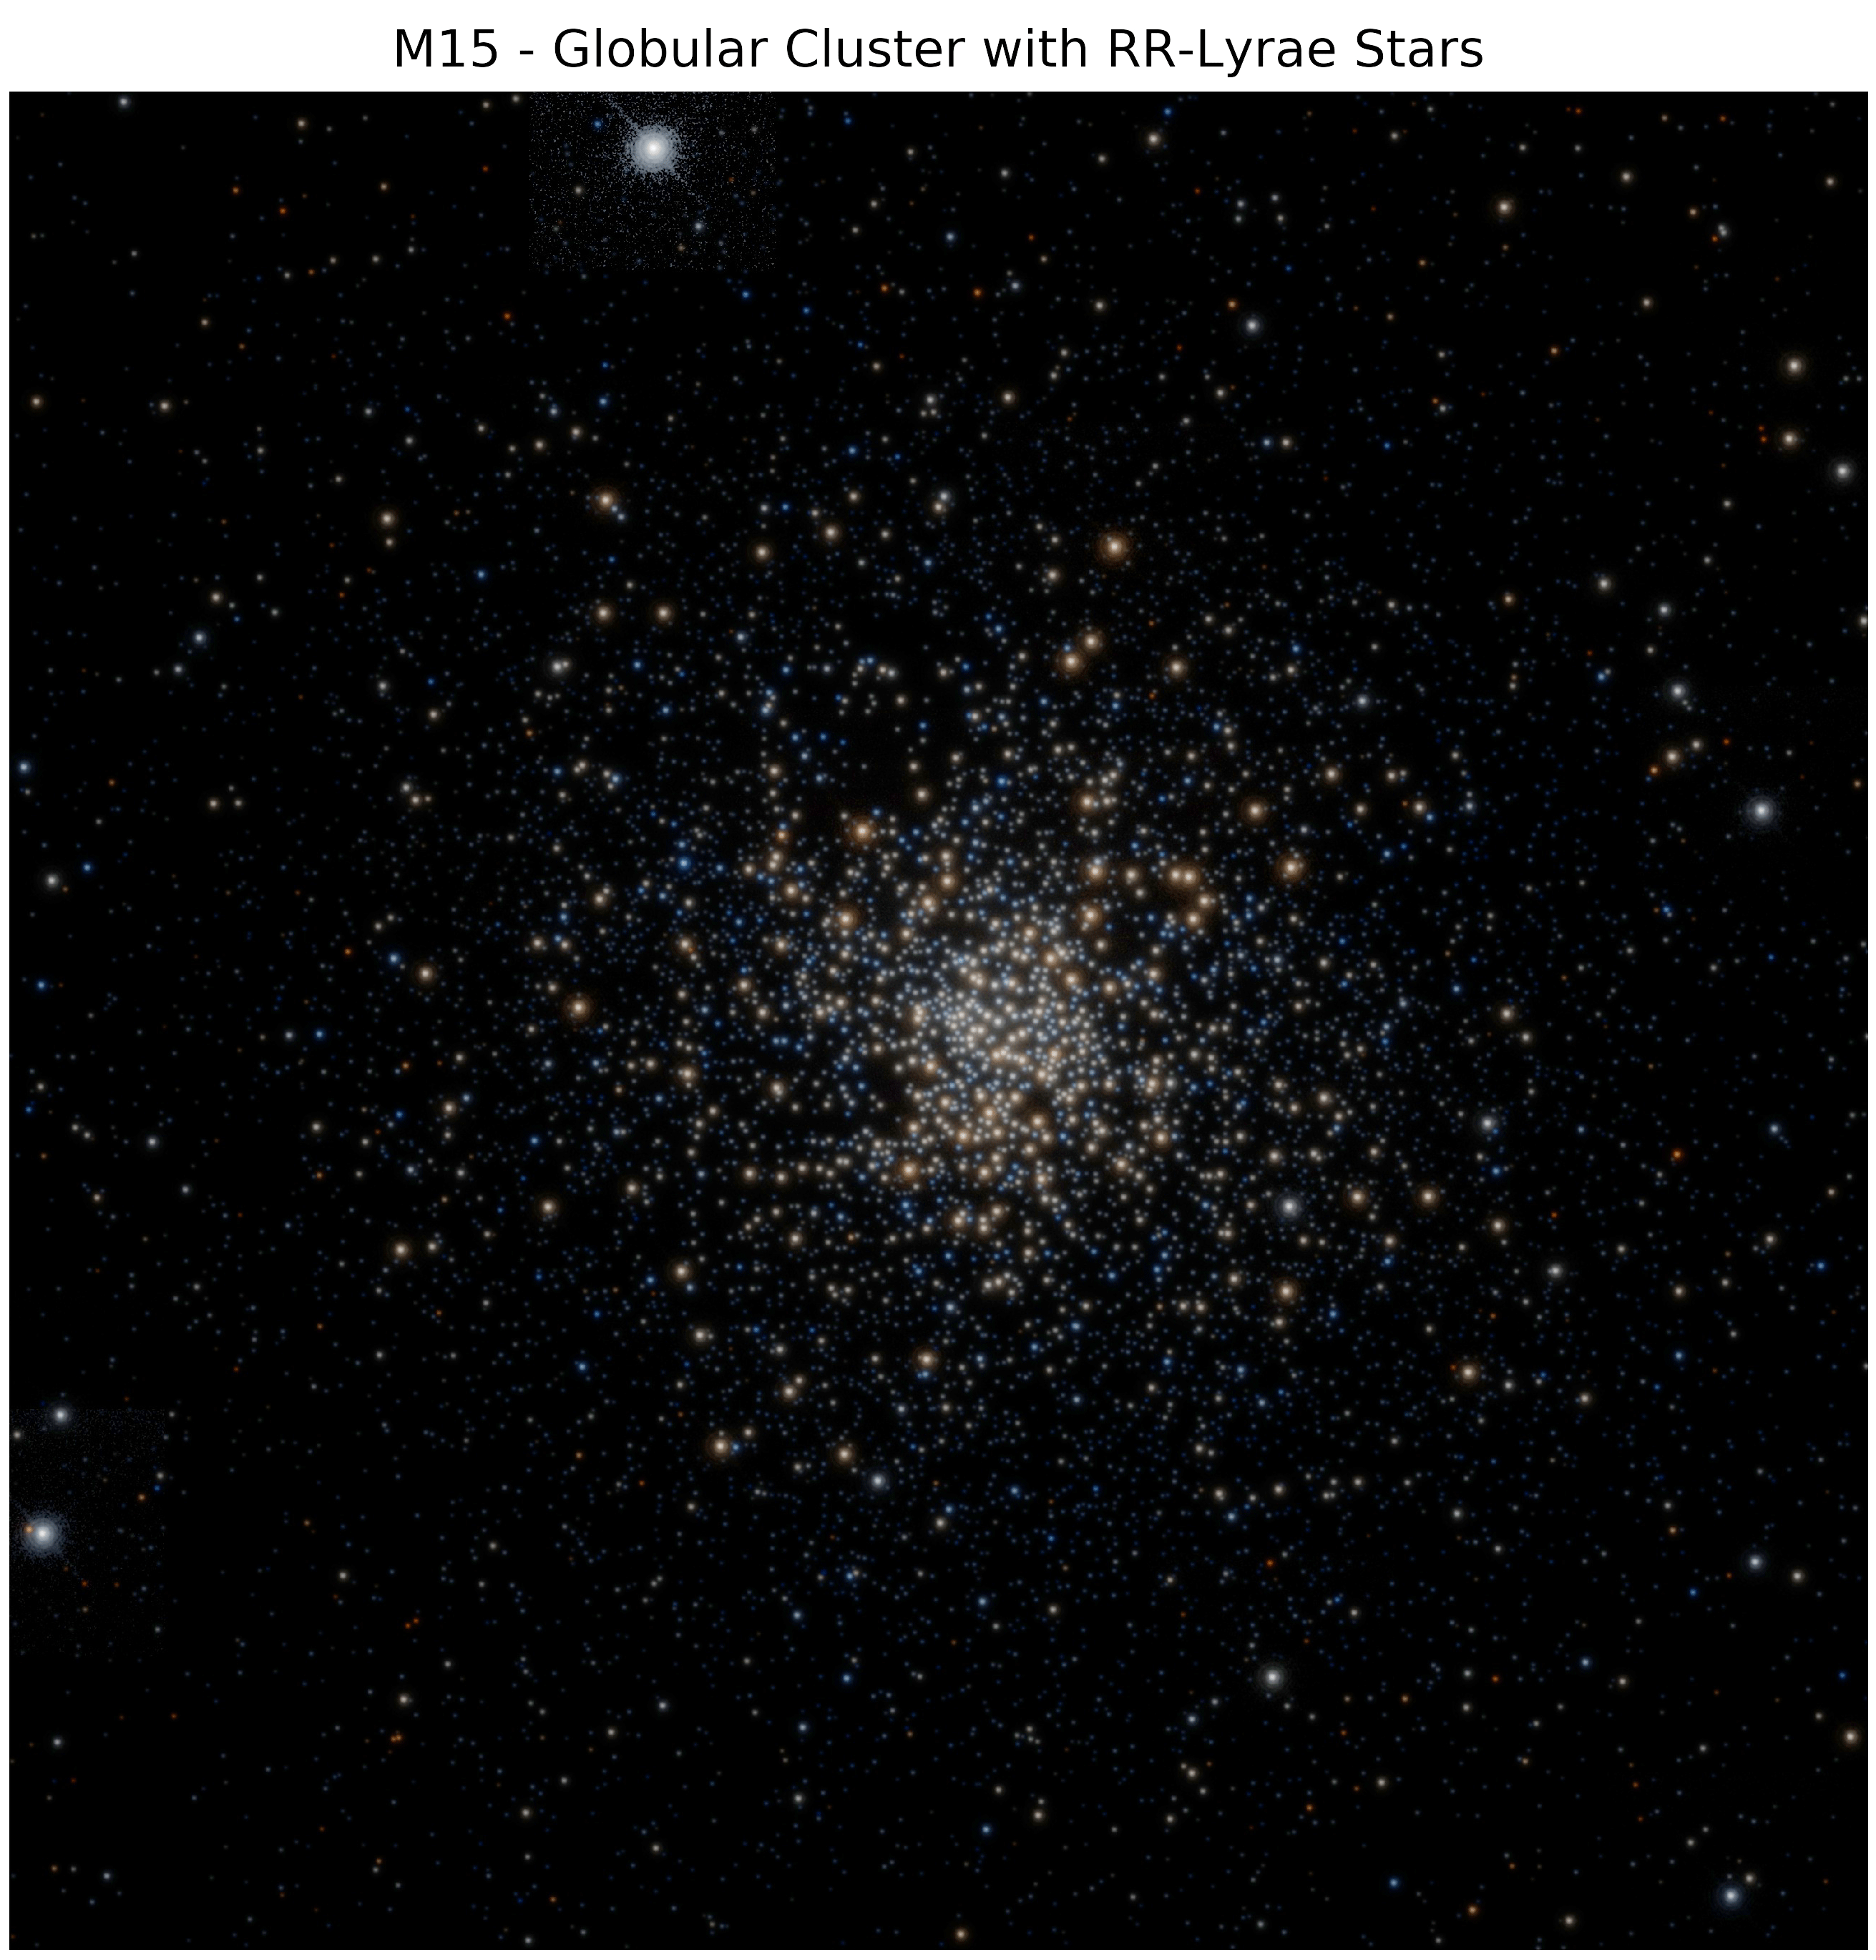 APOD: 2019 March 28 - The Gaia Stars of M15